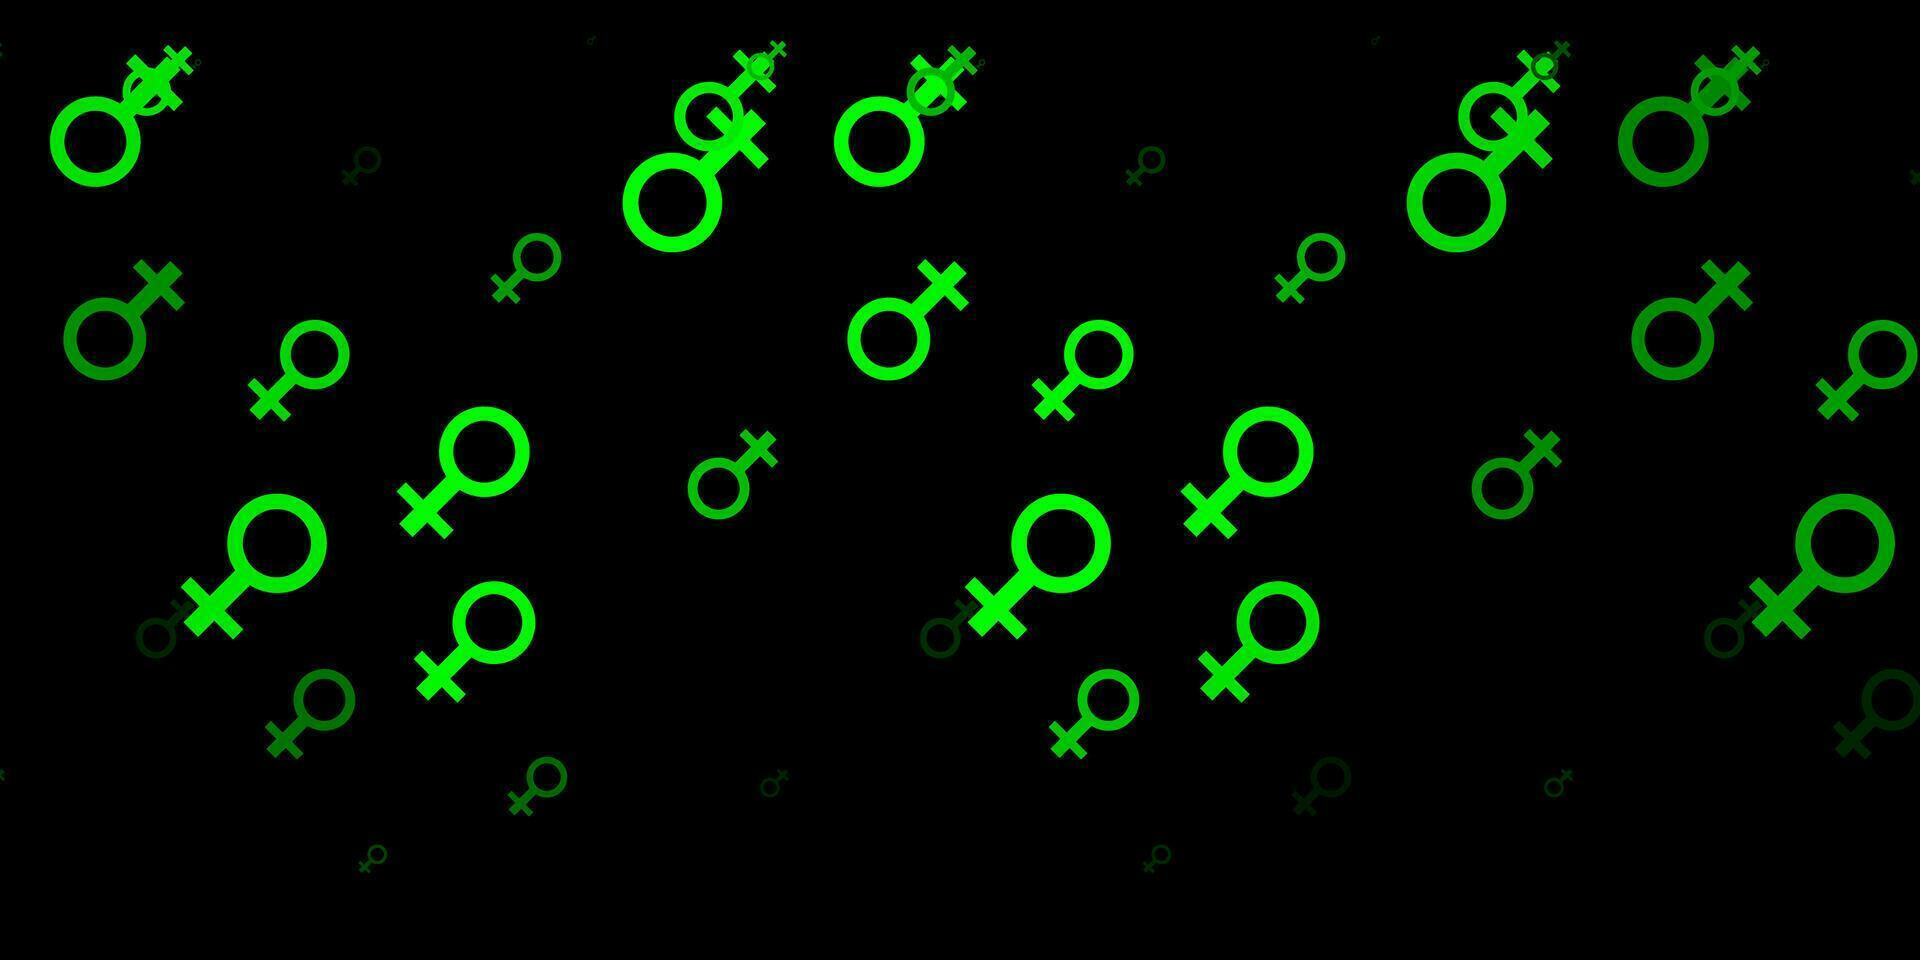 dunkelgrüner, gelber Vektorhintergrund mit Frauensymbolen. vektor